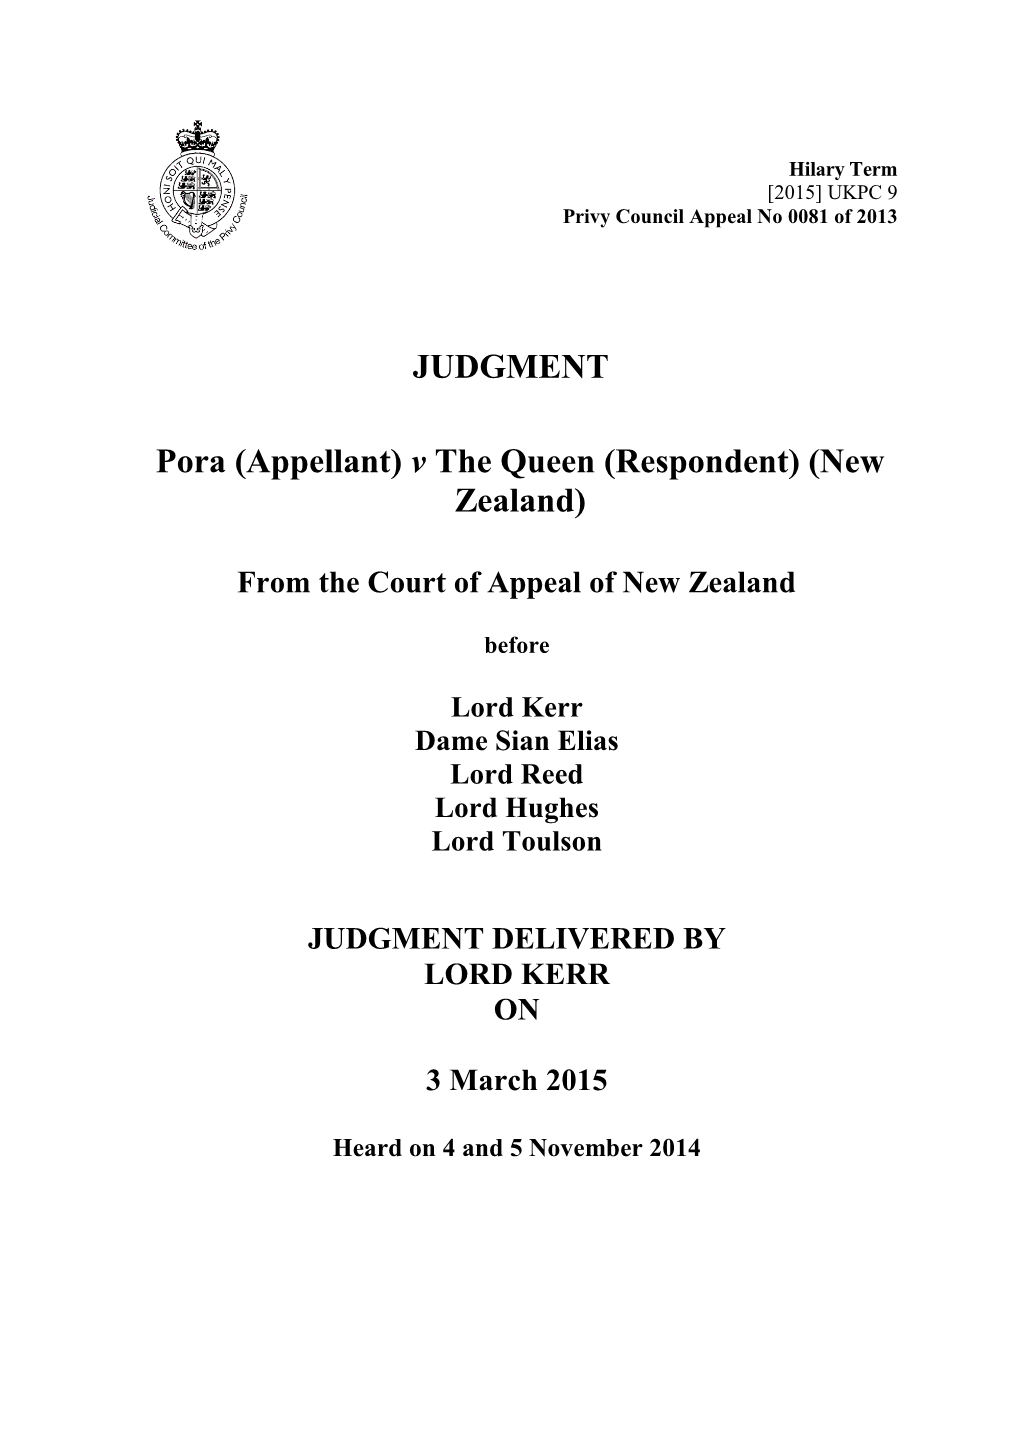 Pora (Appellant) V the Queen (Respondent) (New Zealand)